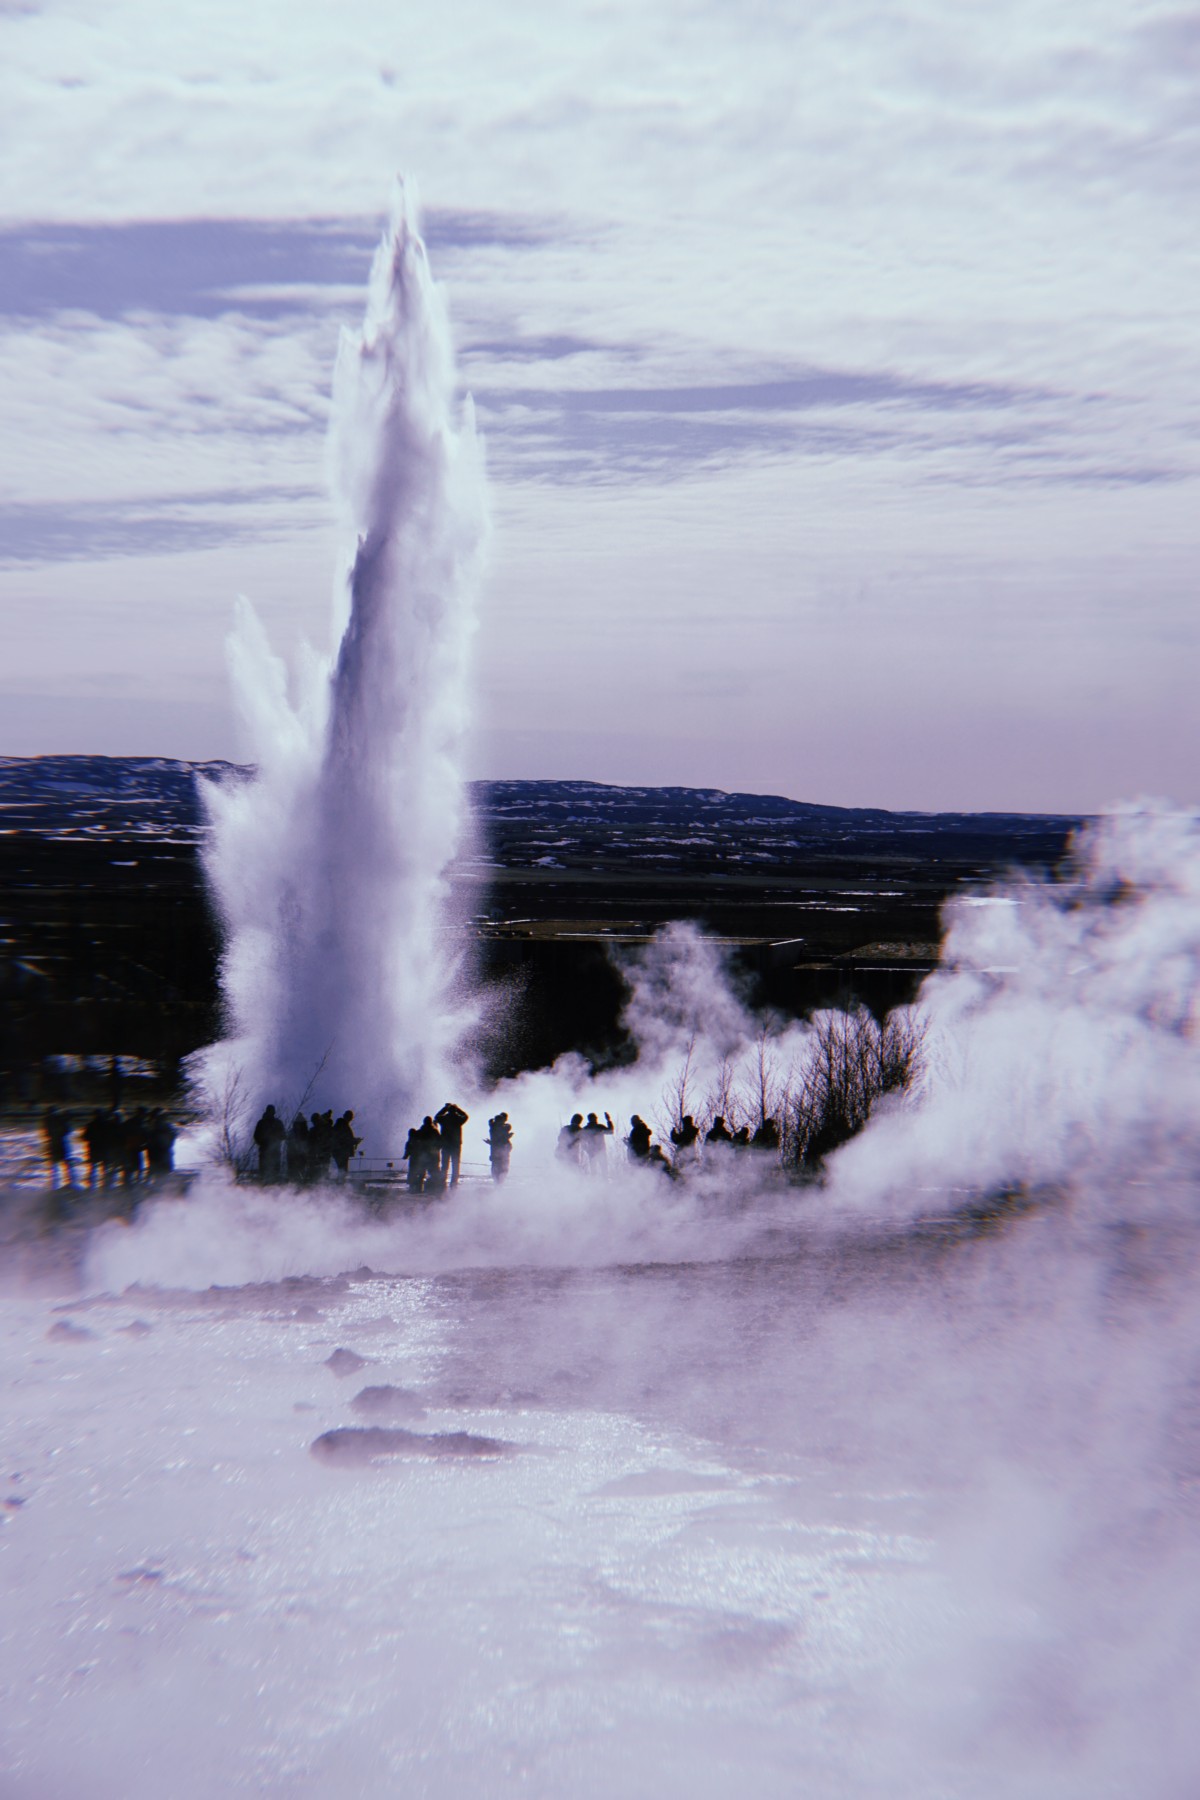 A geysir erupting